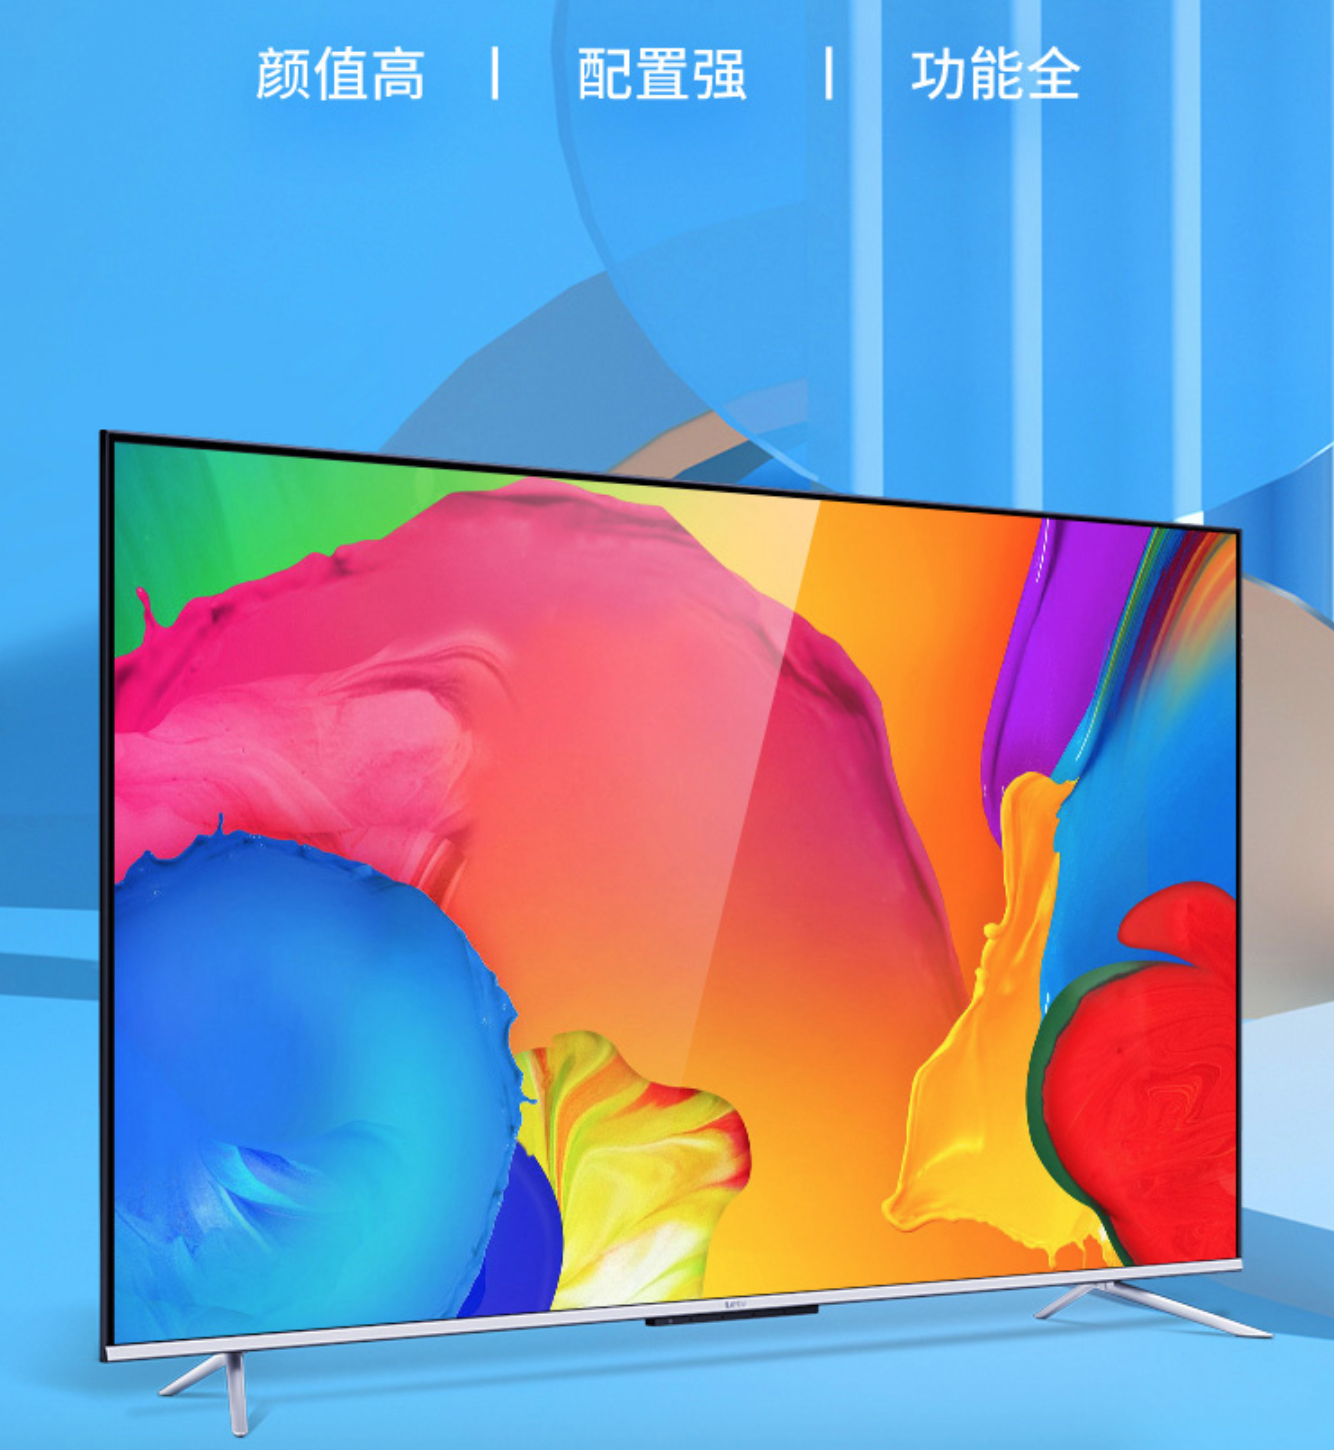 乐视G65S具备优秀电视三要素 颜值高、配置强、功能全